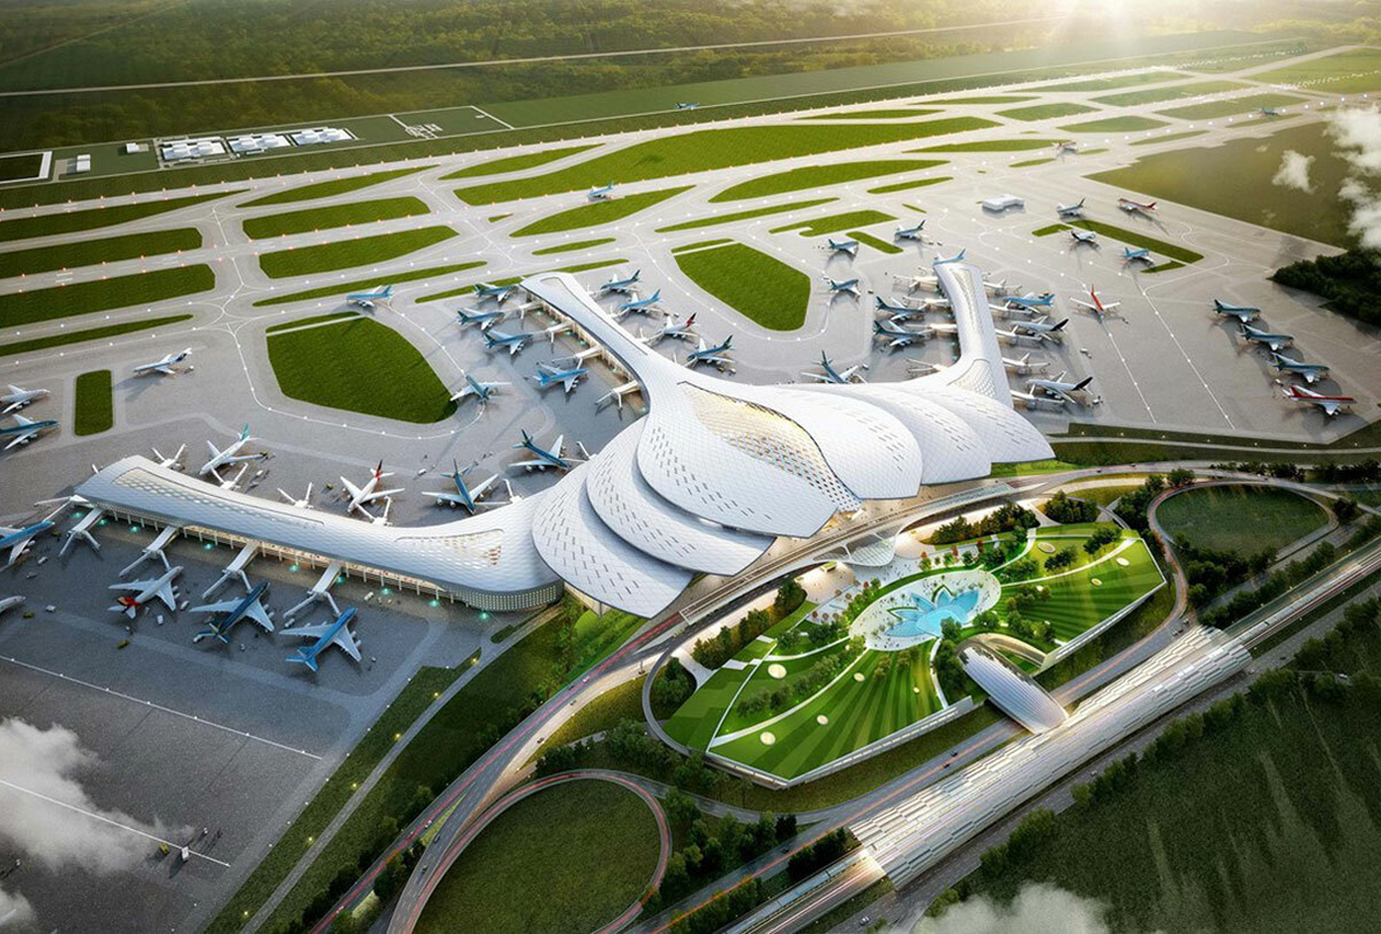 Sân bay quốc tế Long Thành hoàn thành giai đoạn 1 vào năm 2025 sẽ trở thành cửa ngõ giao thương quan trọng, góp phần thúc đẩy kinh tế quốc gia và khu vực